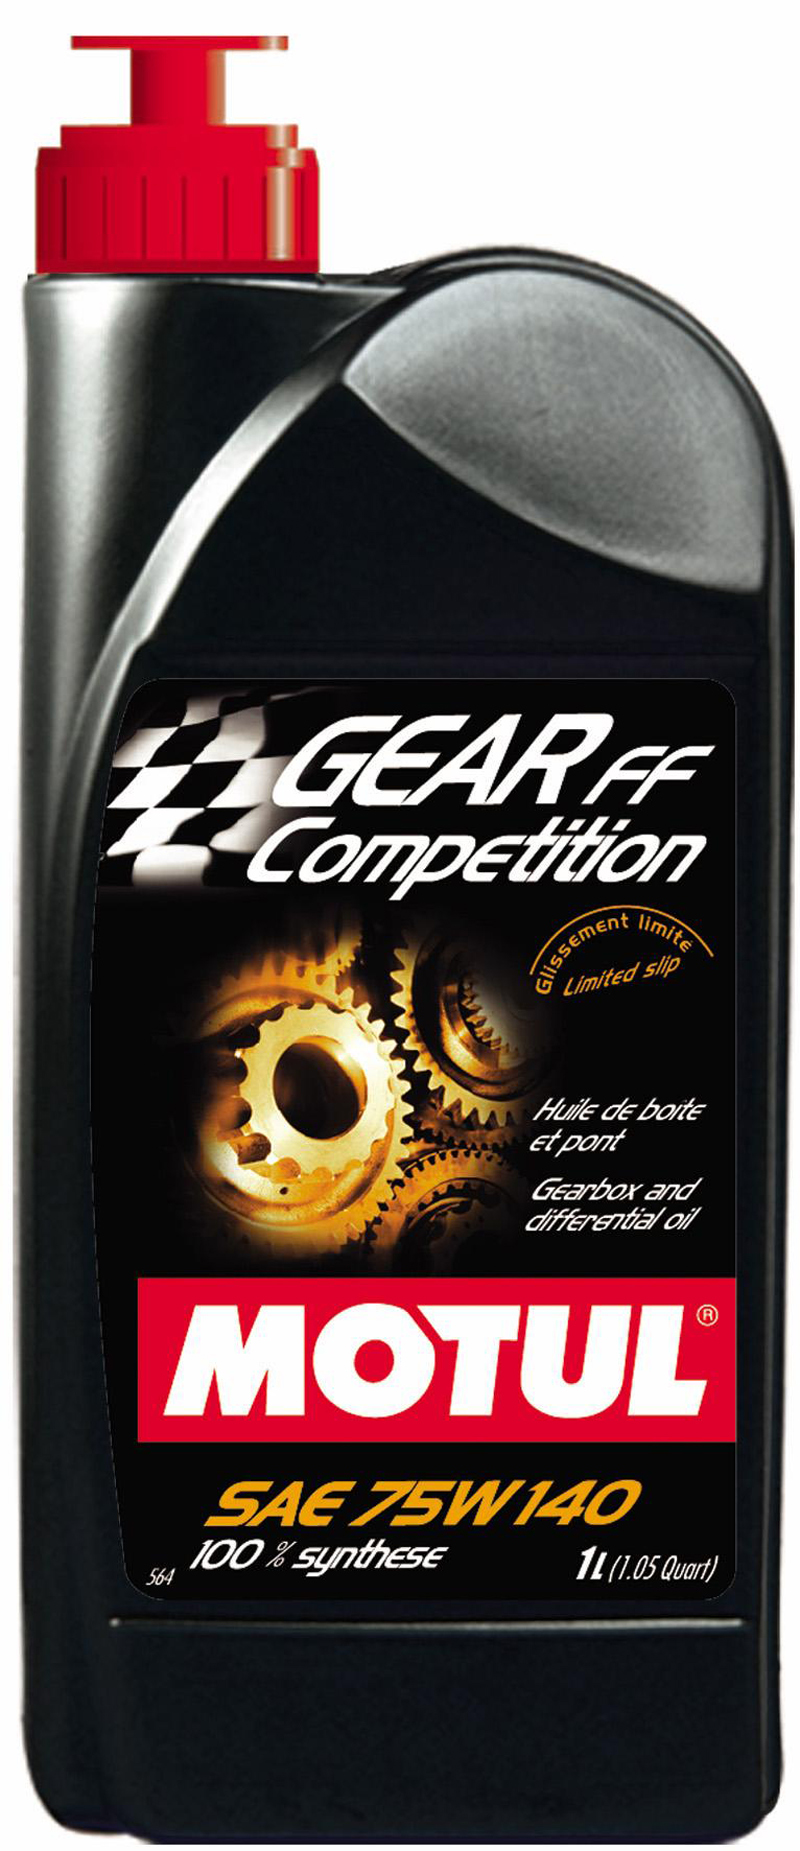 Motul Gear FF Competition 75W140 Синтетическое трансмиссионное масло